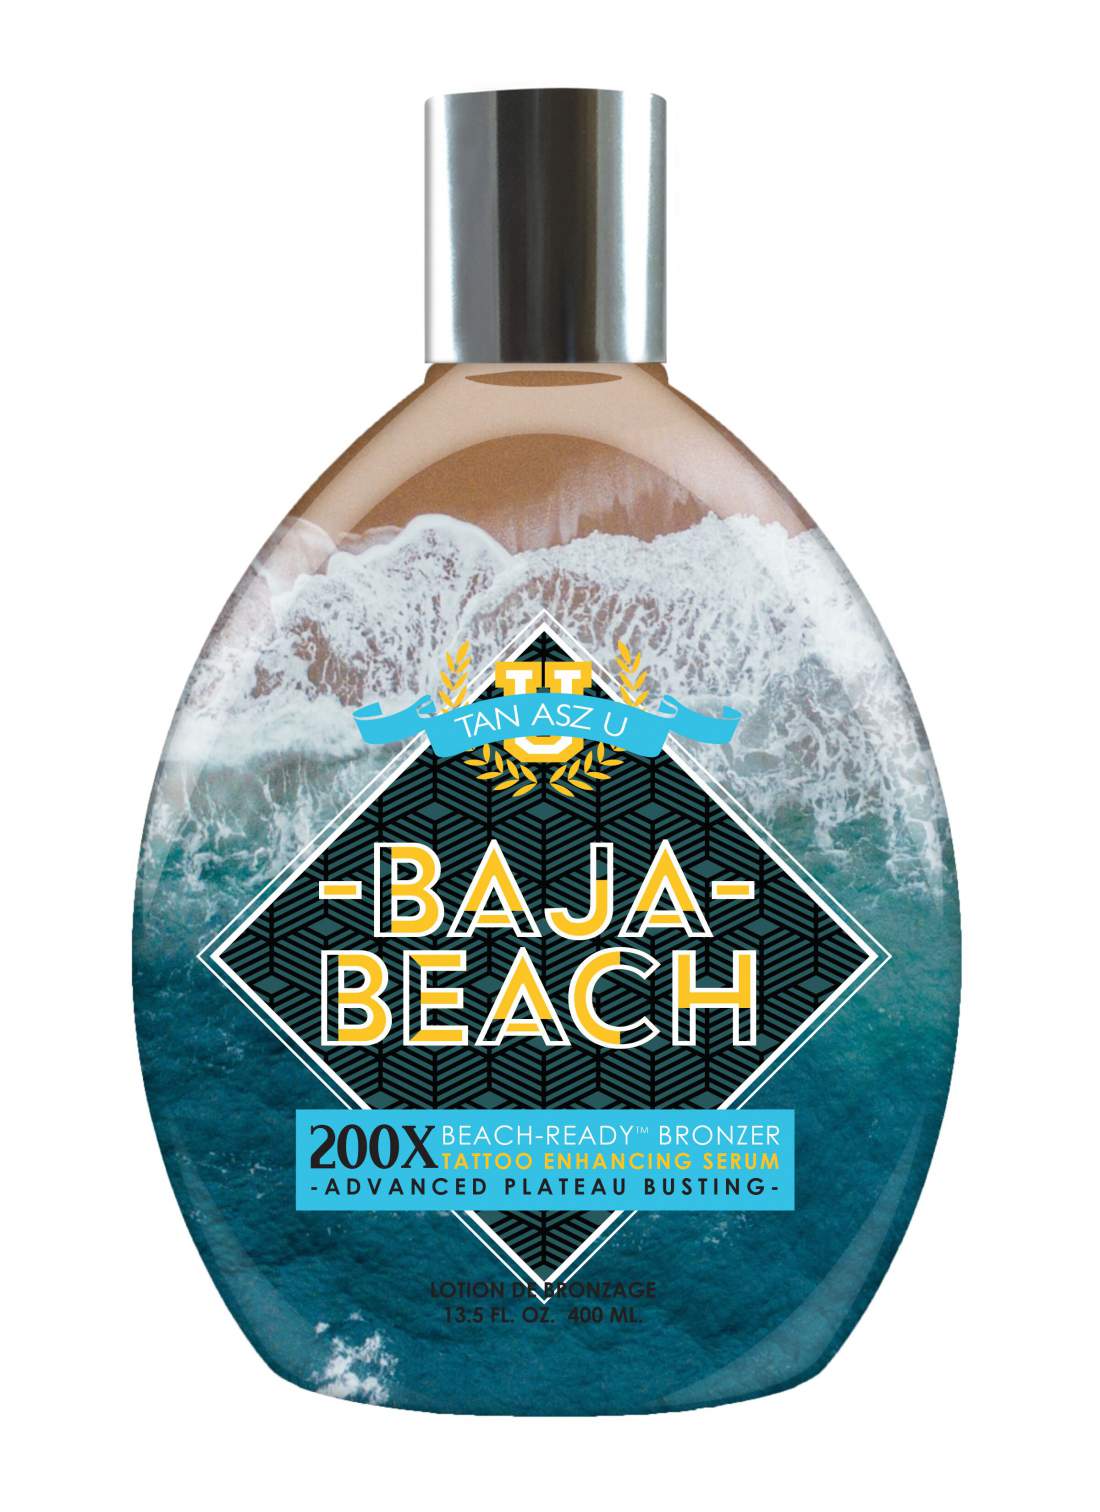 BAJA BEACH 200x